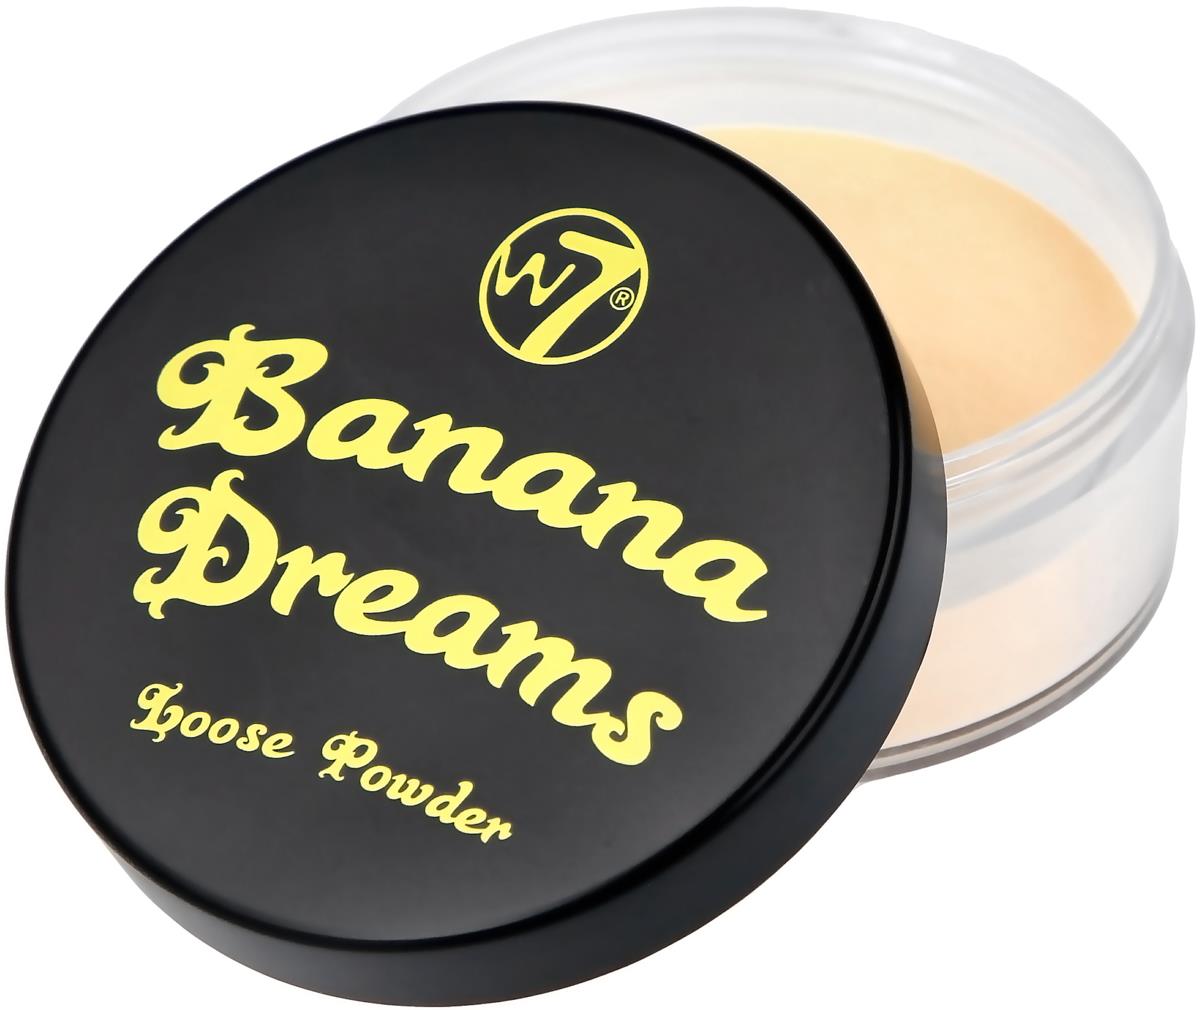 W7 Banana Dreams Loose Powder Banana Dreams Loose Powder